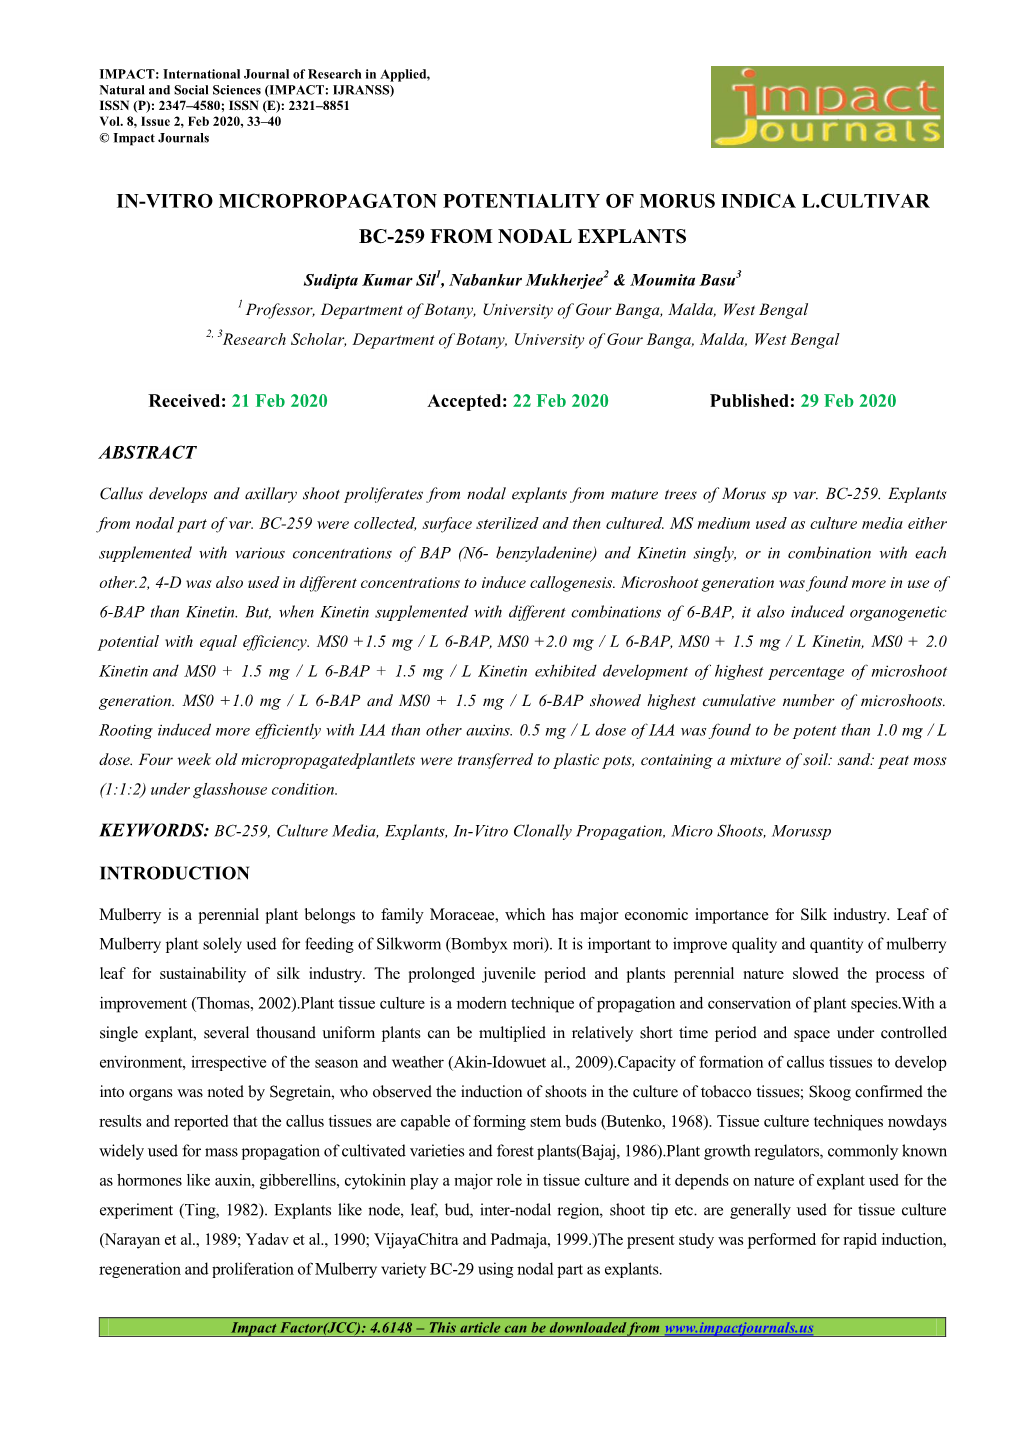 In-Vitro Micropropagaton Potentiality of Morus Indica L.Cultivar Bc-259 from Nodal Explants